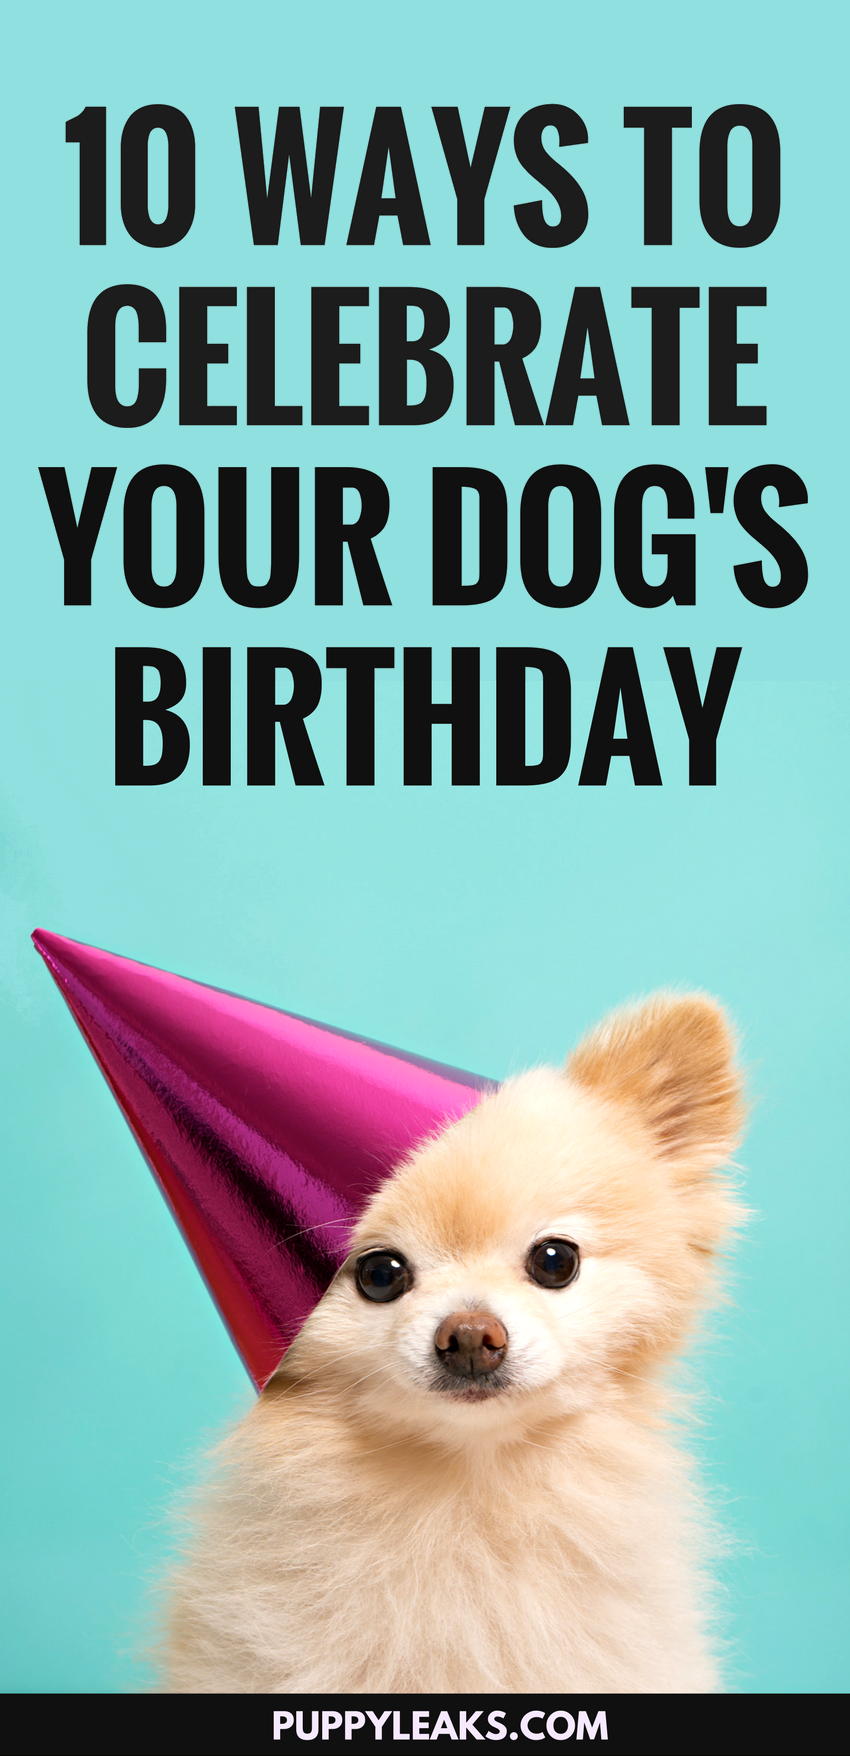 10 maneiras divertidas de comemorar o aniversário do seu cachorro